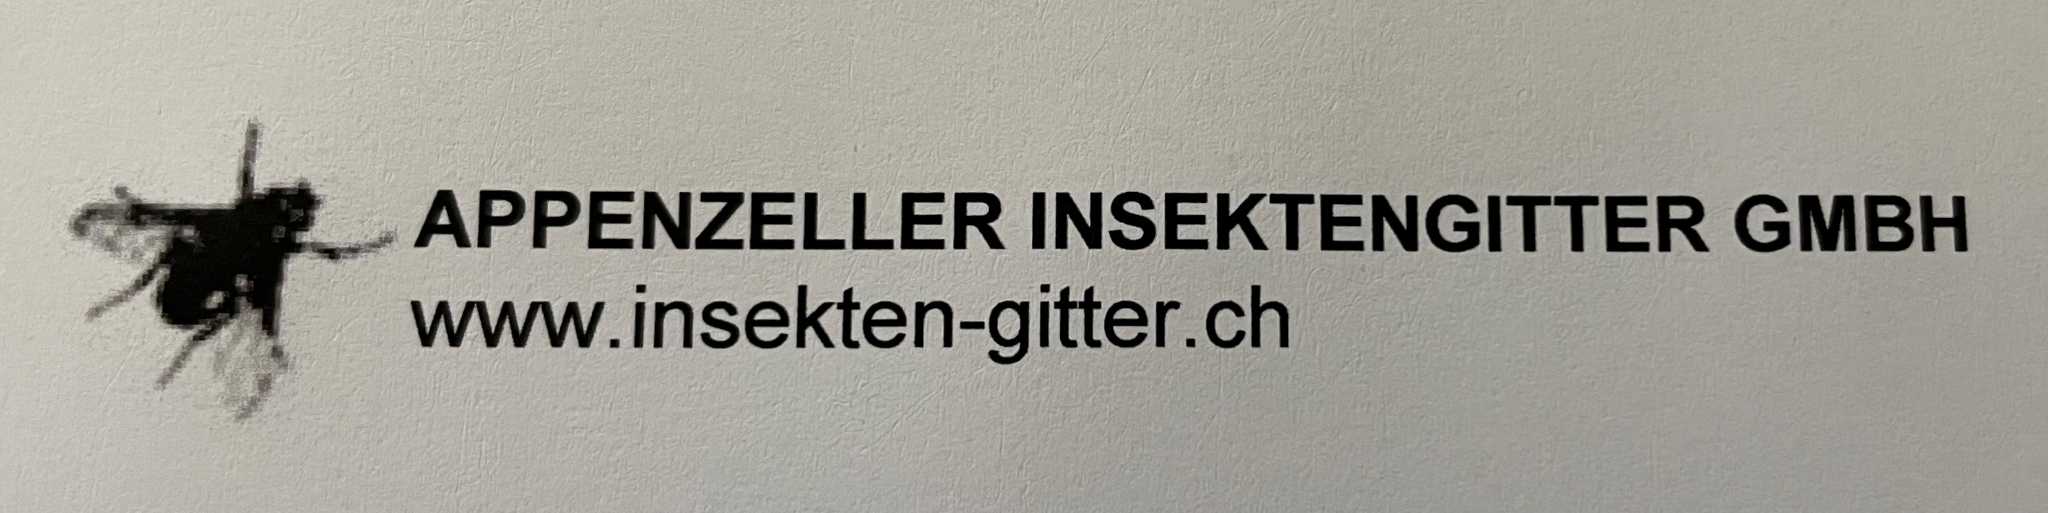 Appenzeller Insektengitter GmbH 